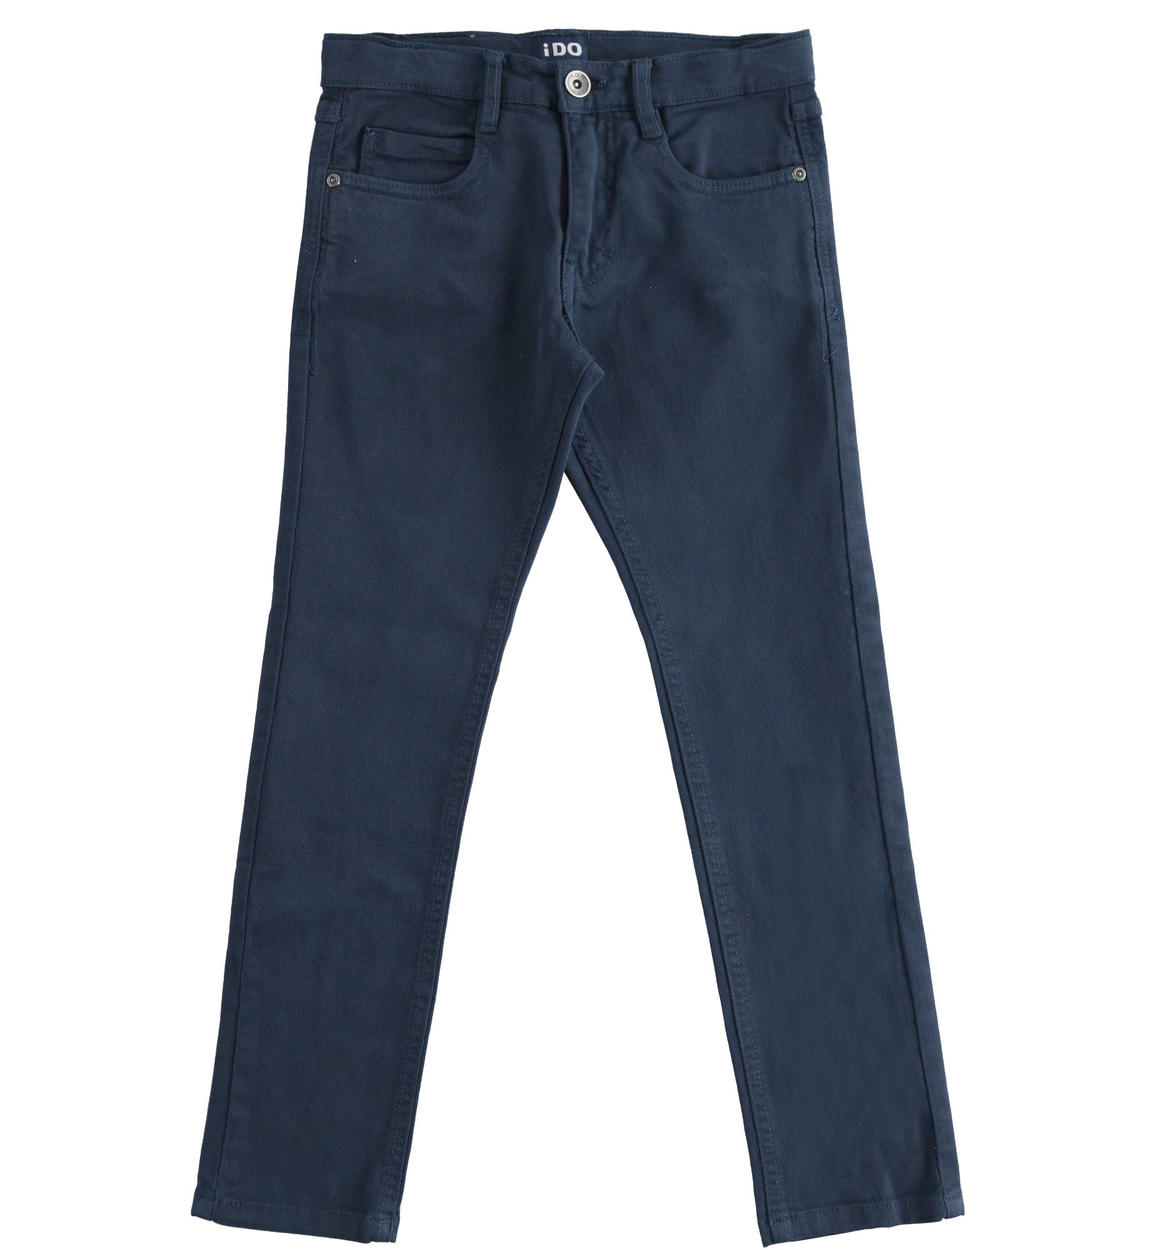 Pantalone modello cinque tasche in twill BLU iDO